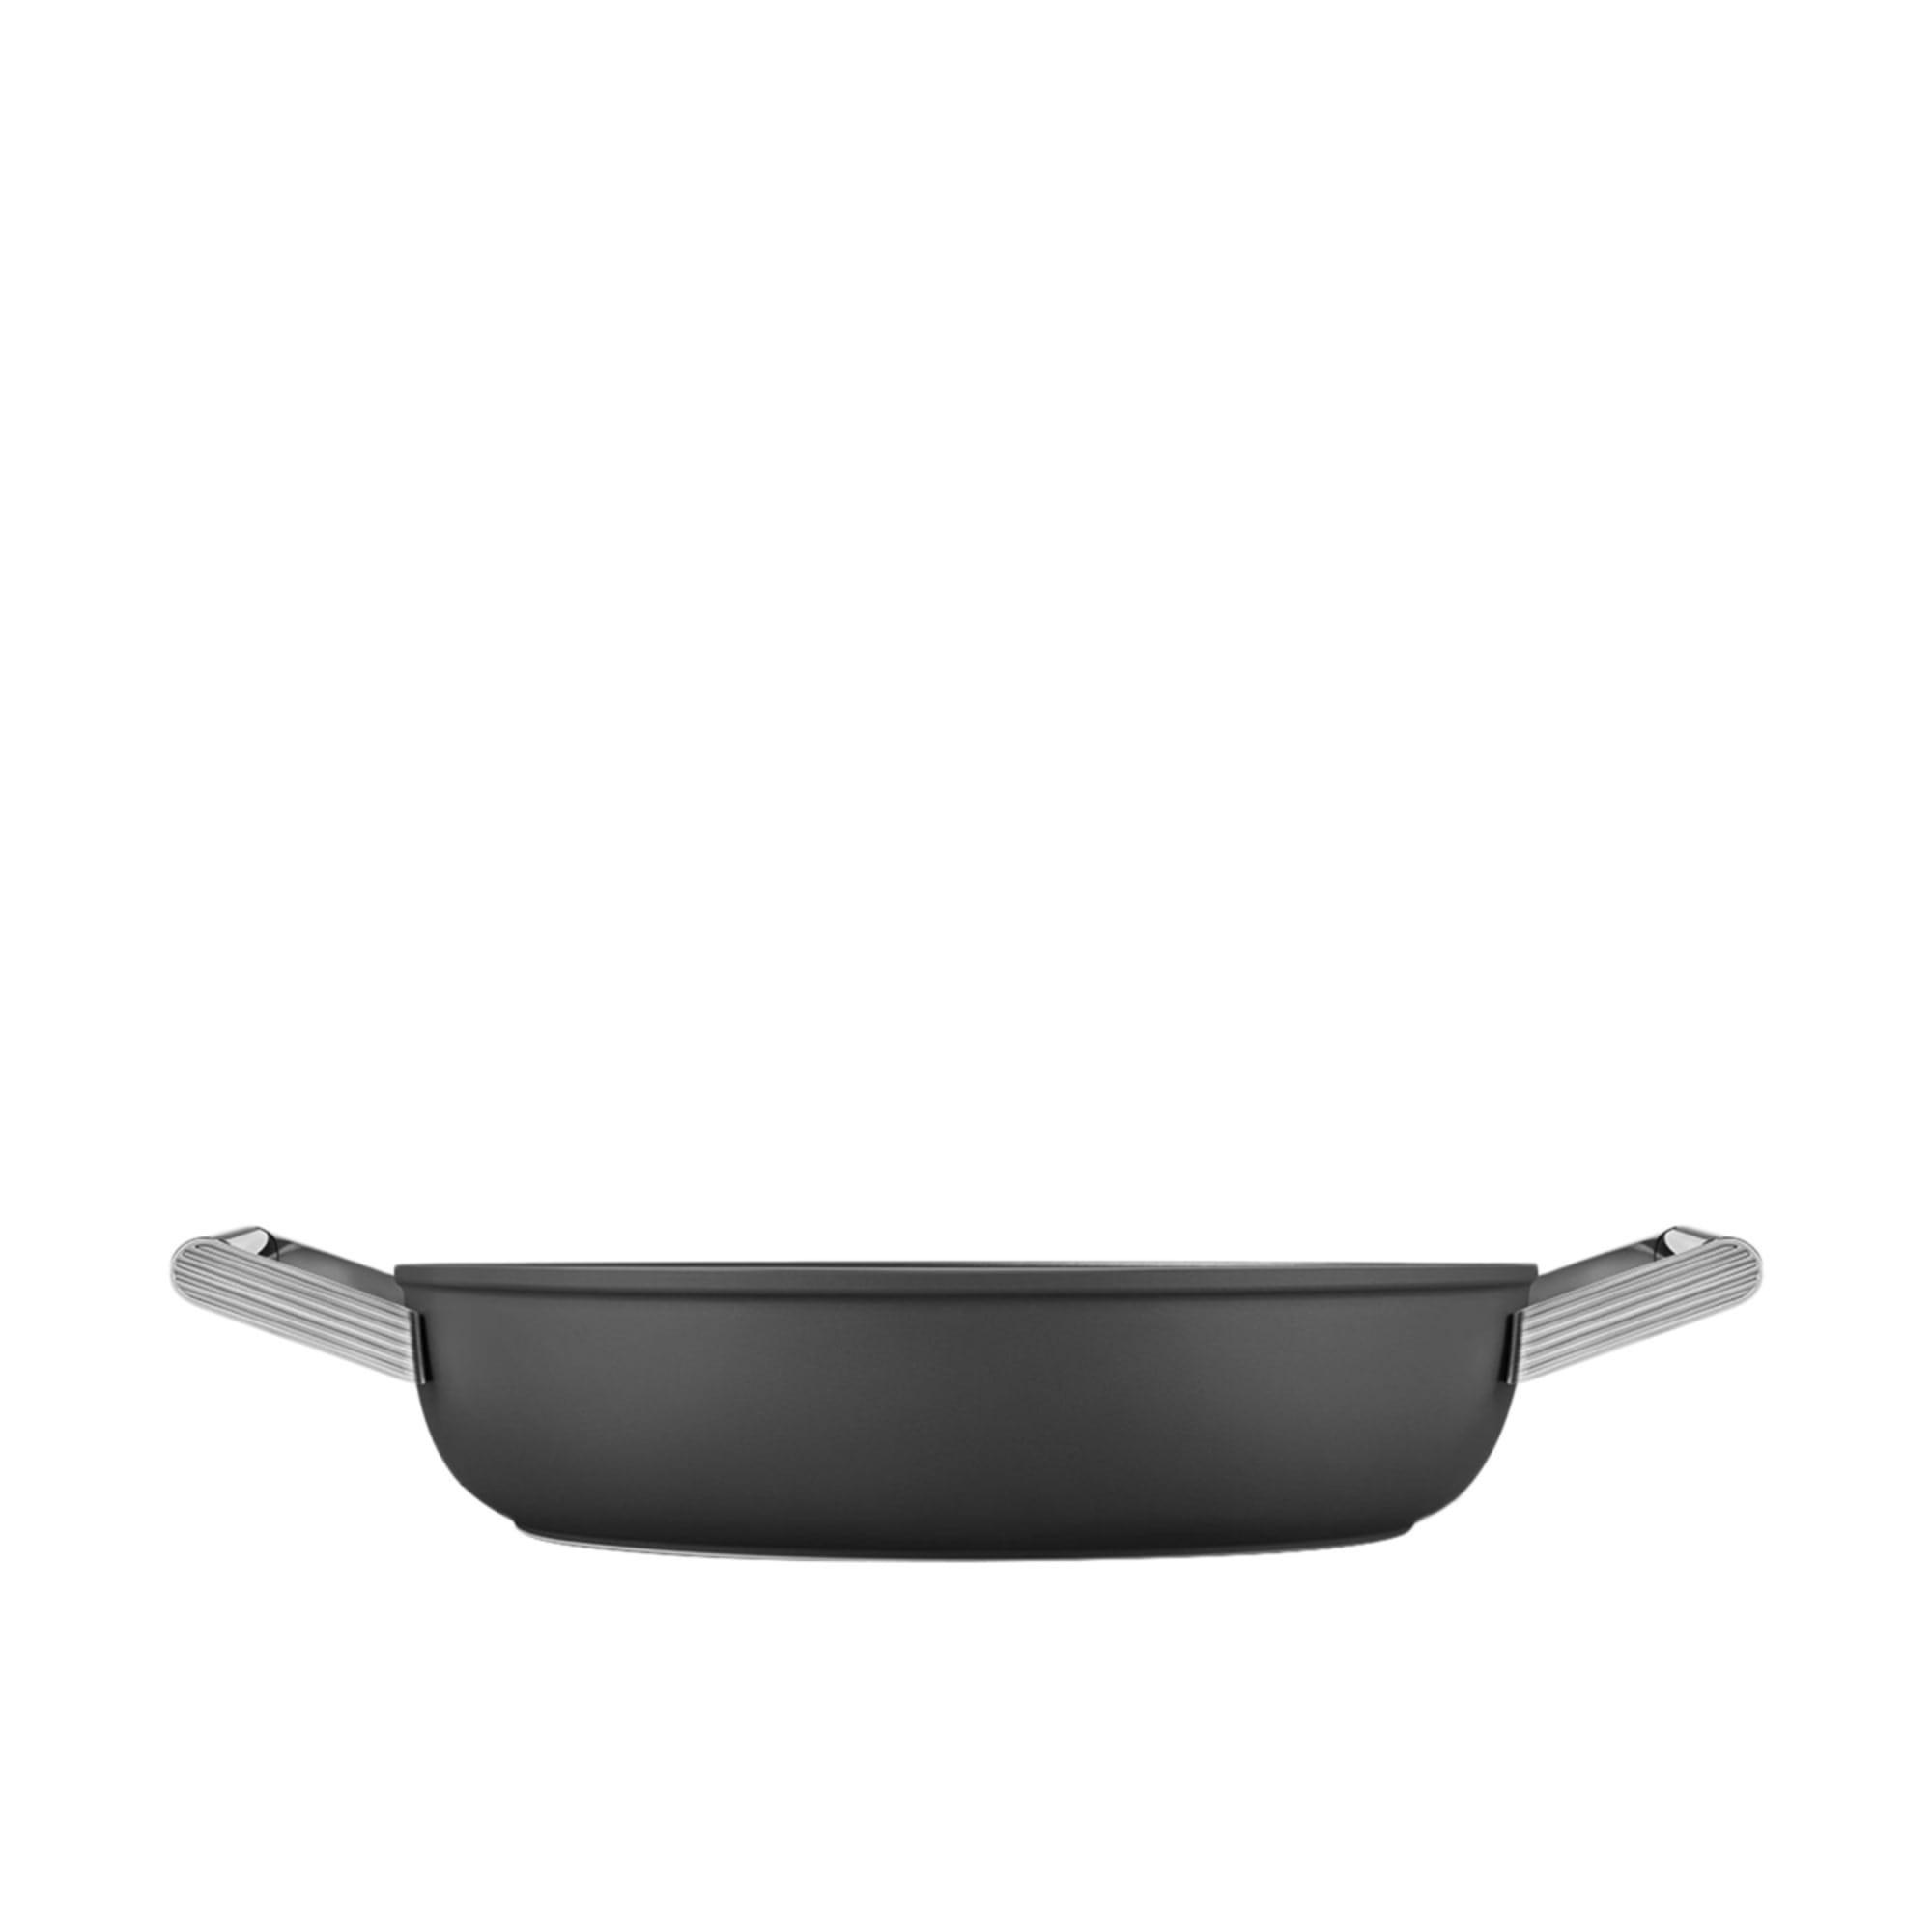 Smeg Non Stick Chef's Pan with Lid 28cm - 3.7L Black Image 3